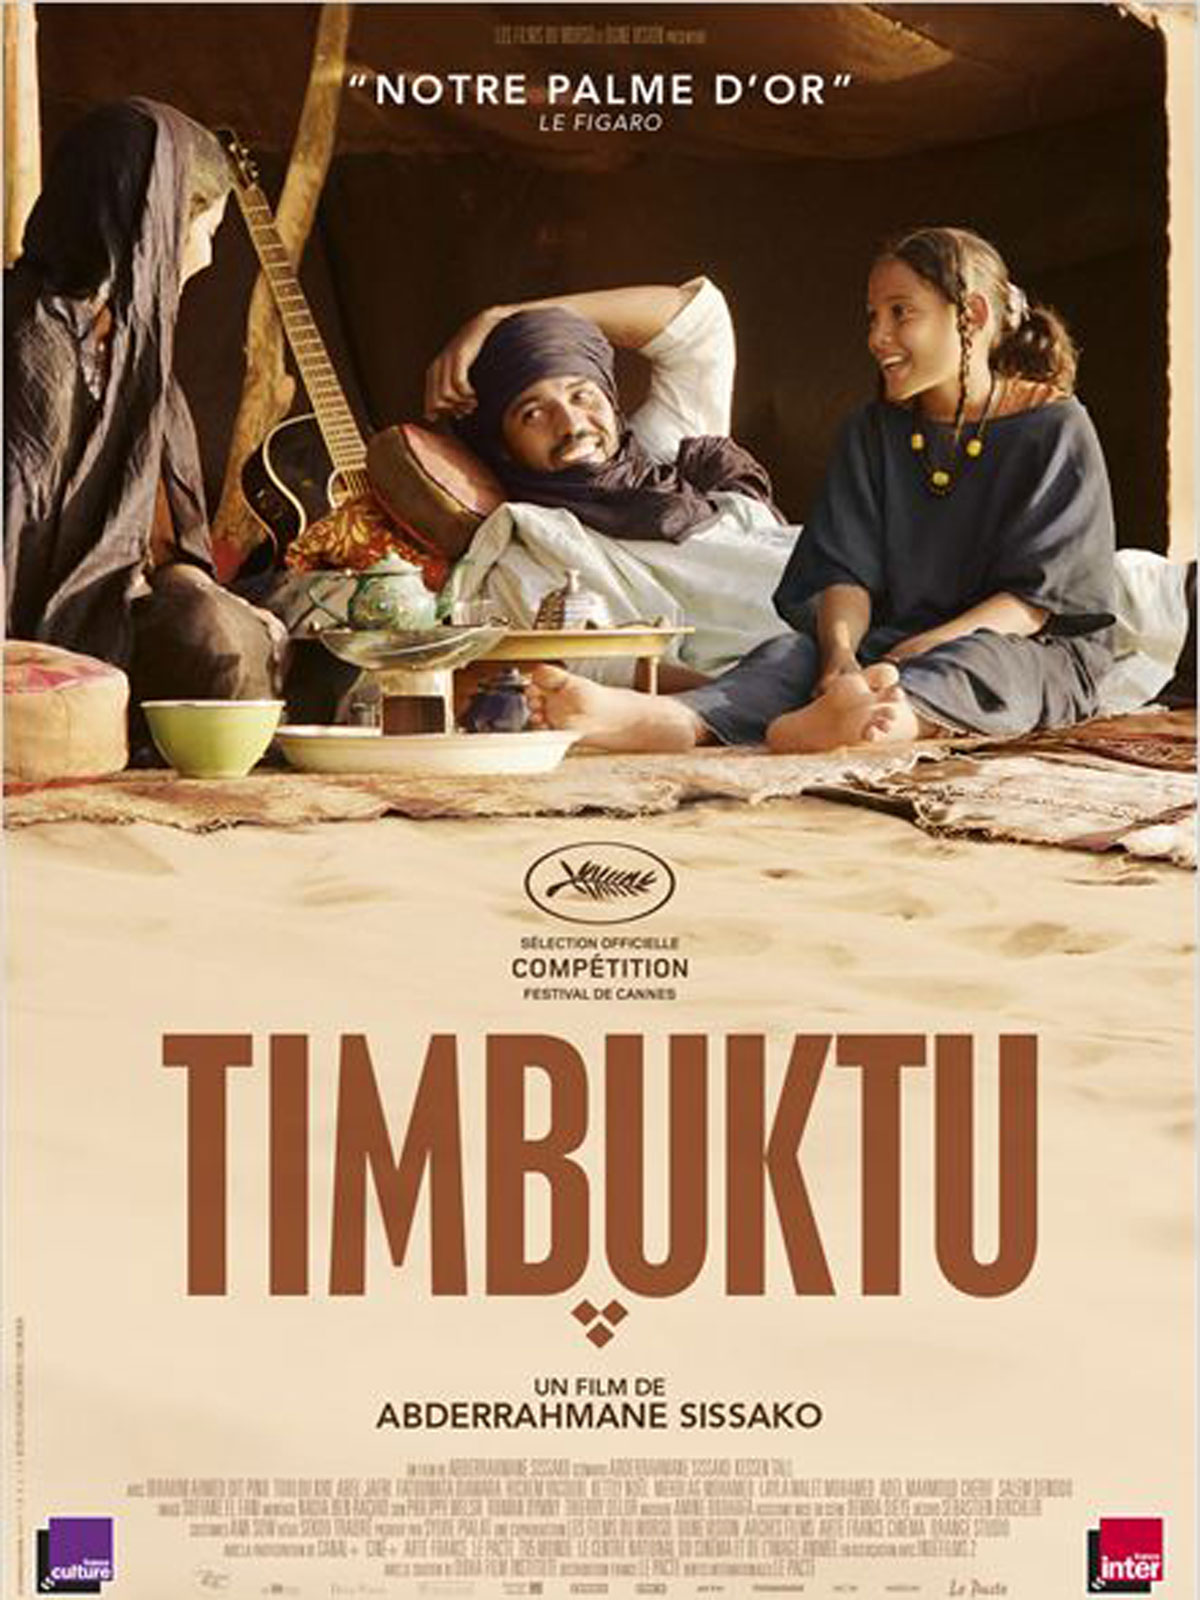 République-Nation, un chemin qui mène à Timbuktu